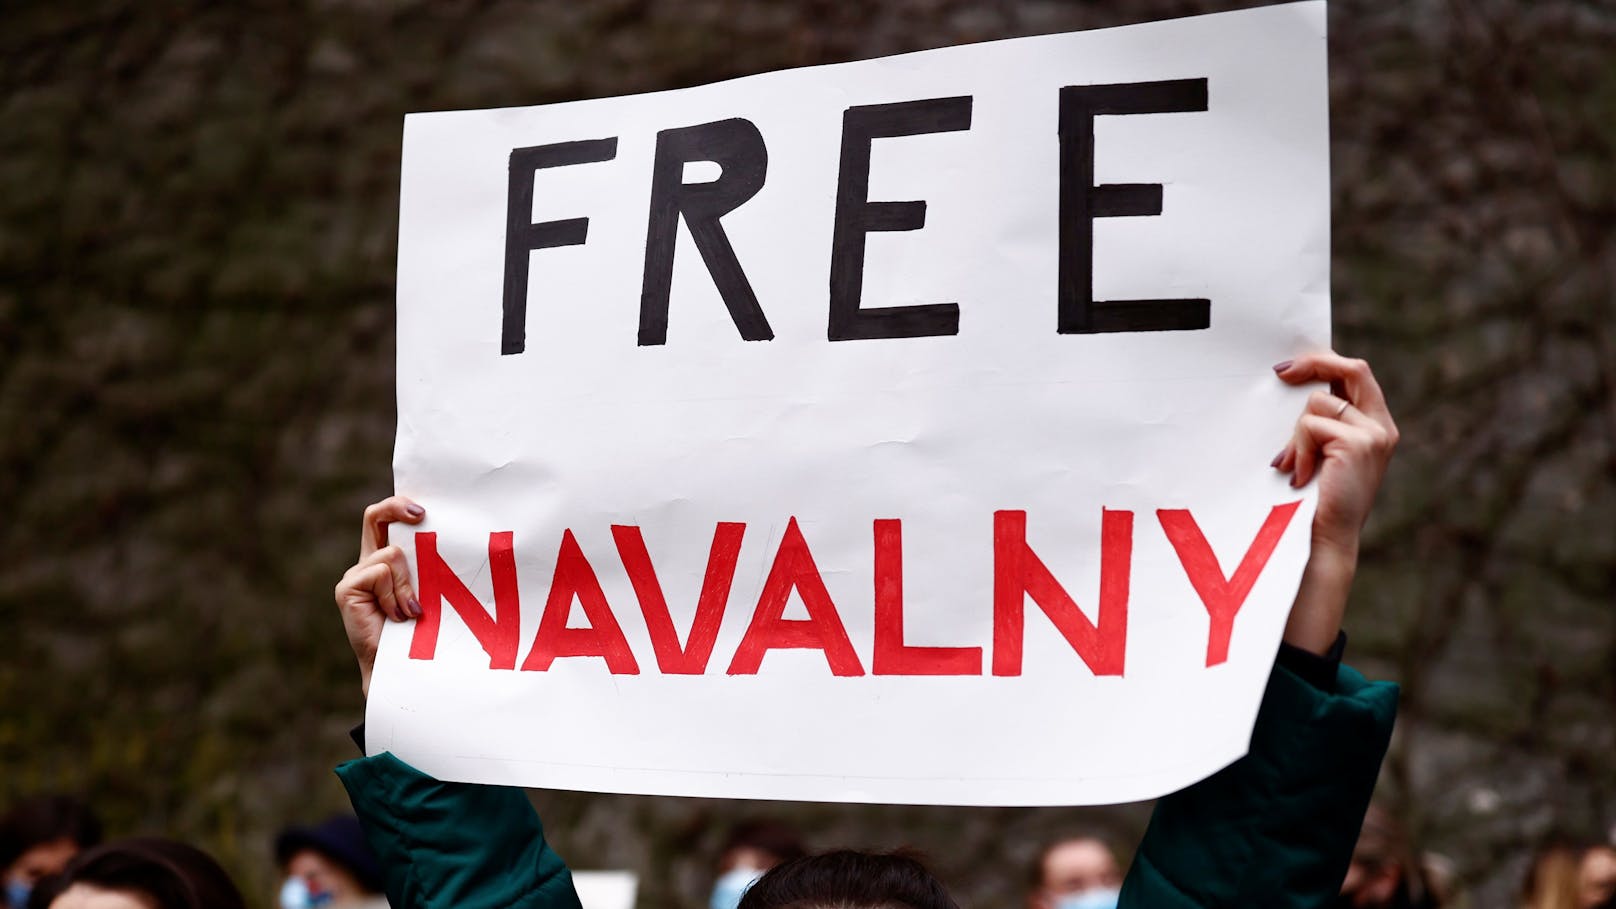 Immer wieder demonstrierten Anhänger Nawalnys für dessen Freilassung.&nbsp;